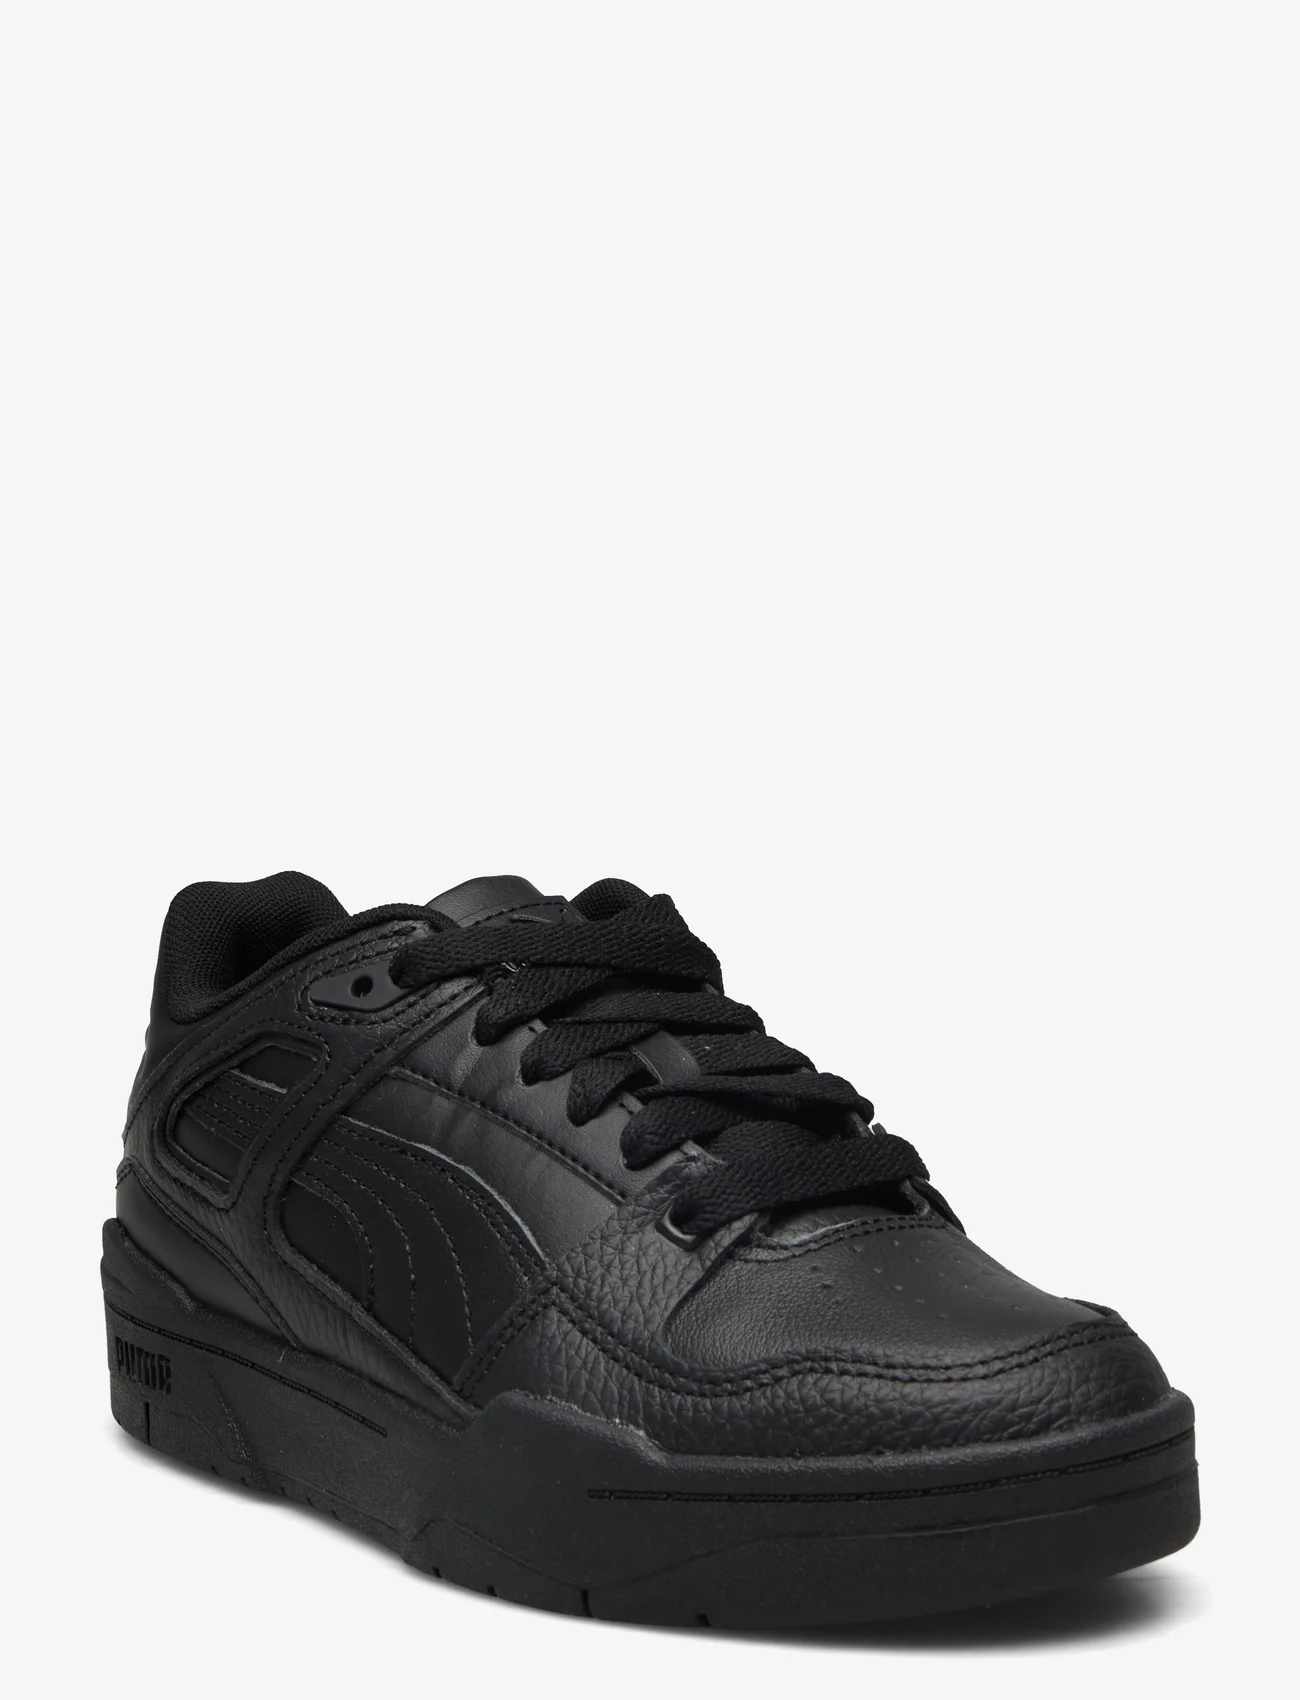 PUMA - Slipstream lth - shoes - puma black-puma black - 0